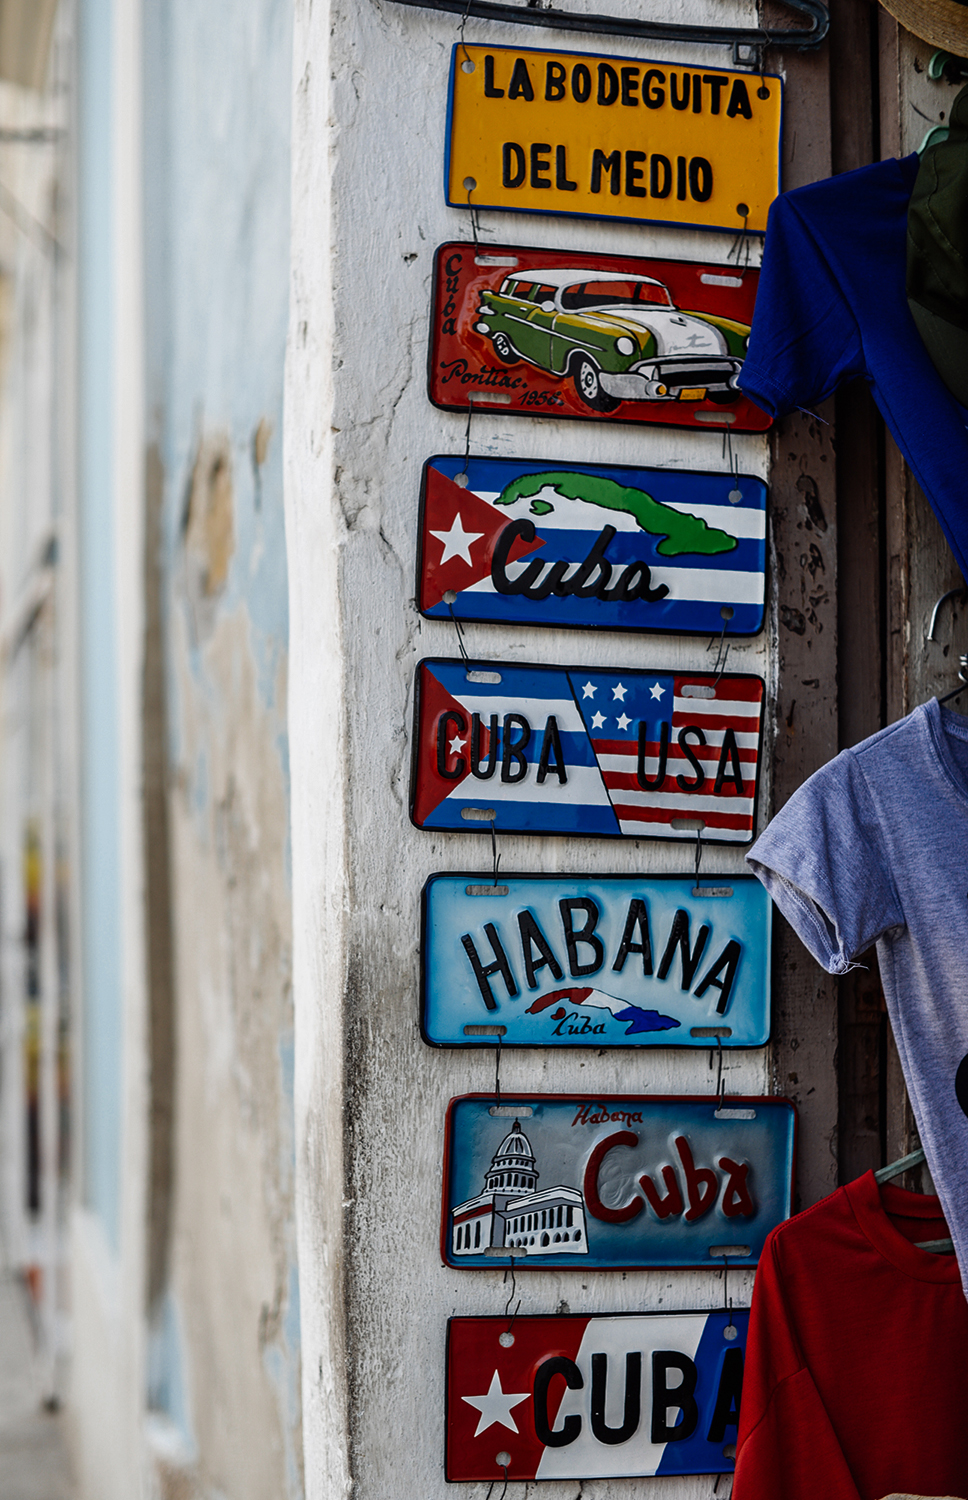 Havanna Reise Tipps_Havanna 3 Tage_Havanna reise erfahrung_Havanna sehenswürdigkeiten_Havanna tipps_Kiamisu_Reiseblog-final23